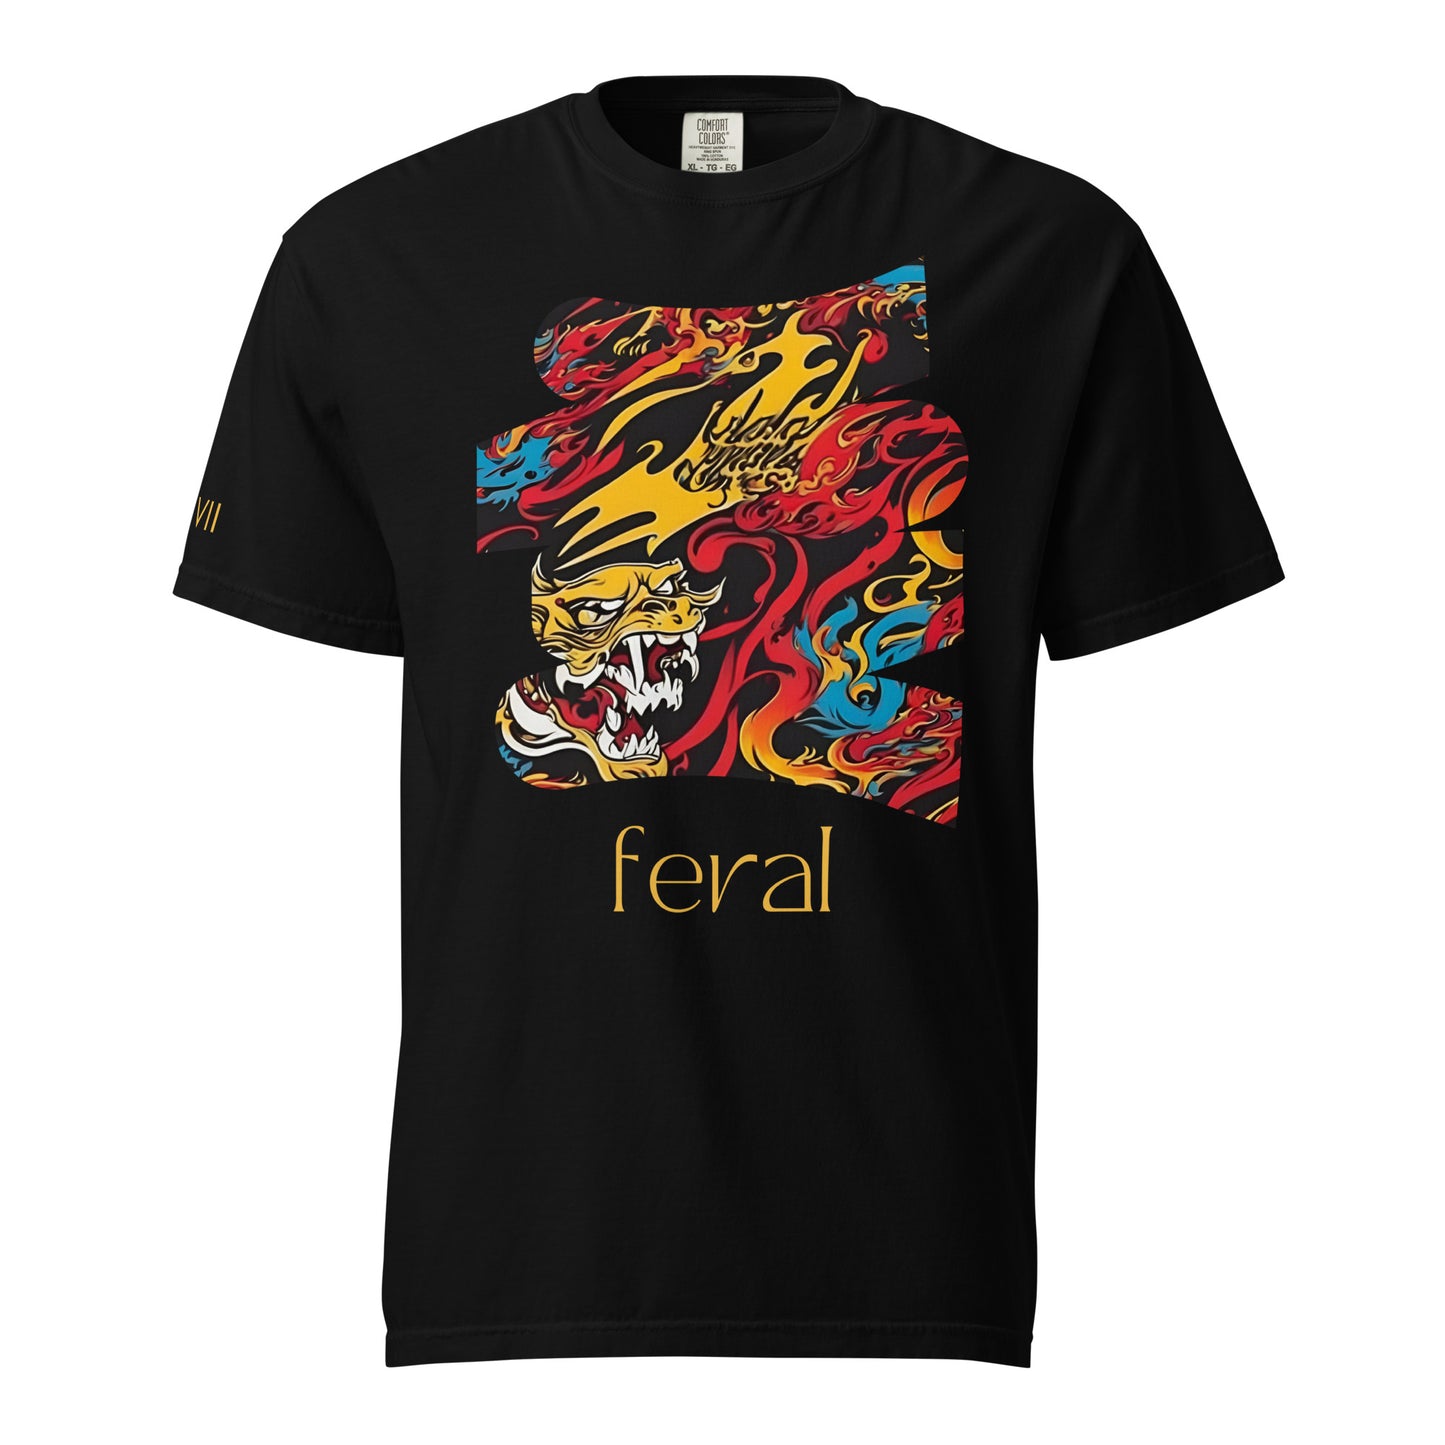 Feral- Tee